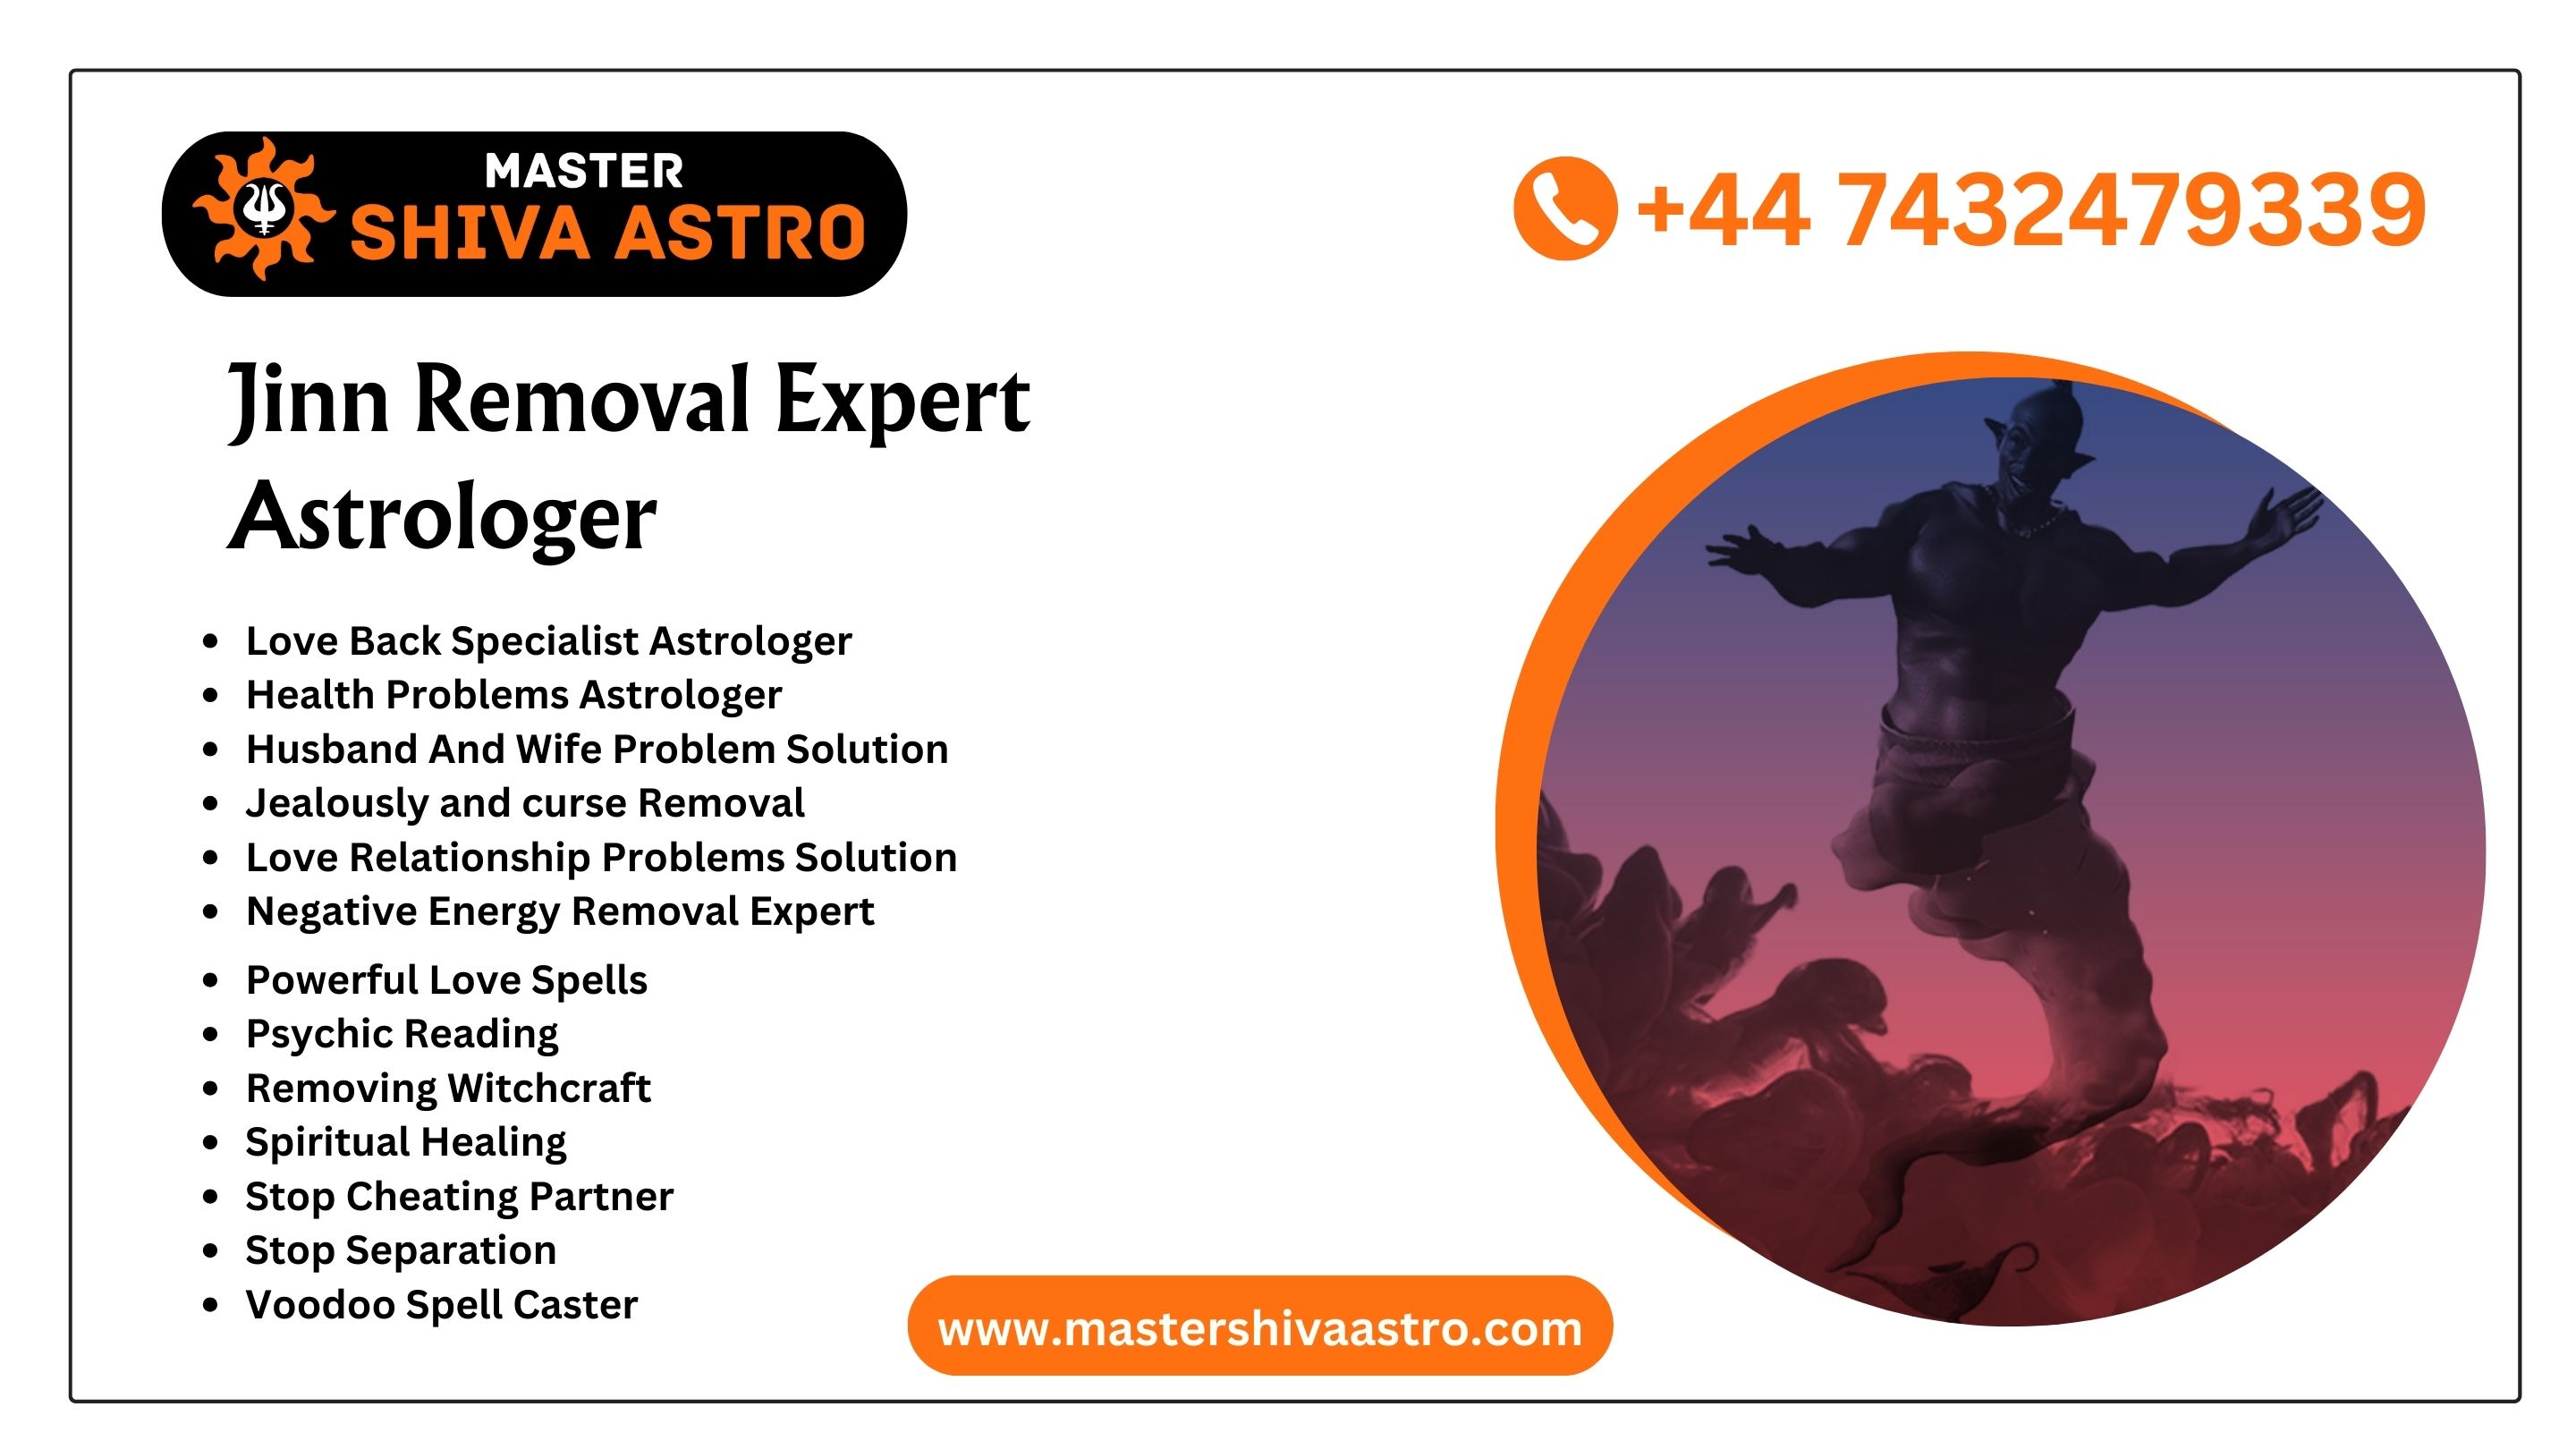 Jinn Removal Expert Astrologer - Master Shiva